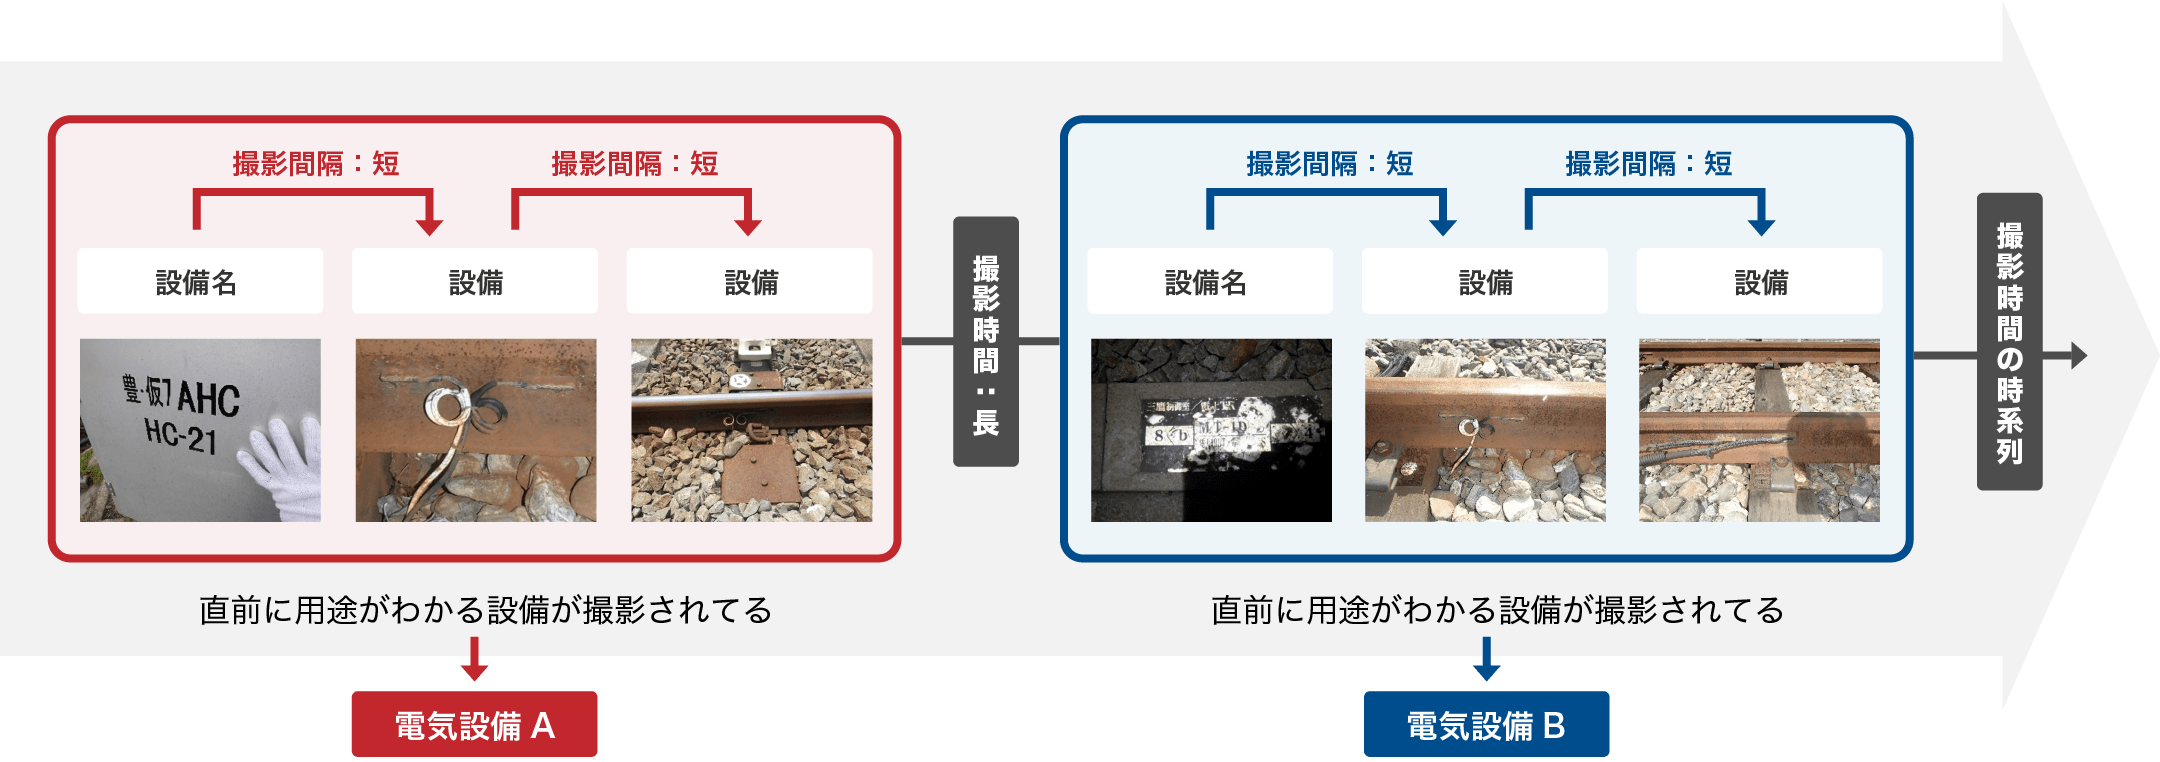 鉄道電気設備の写真分類AIの例